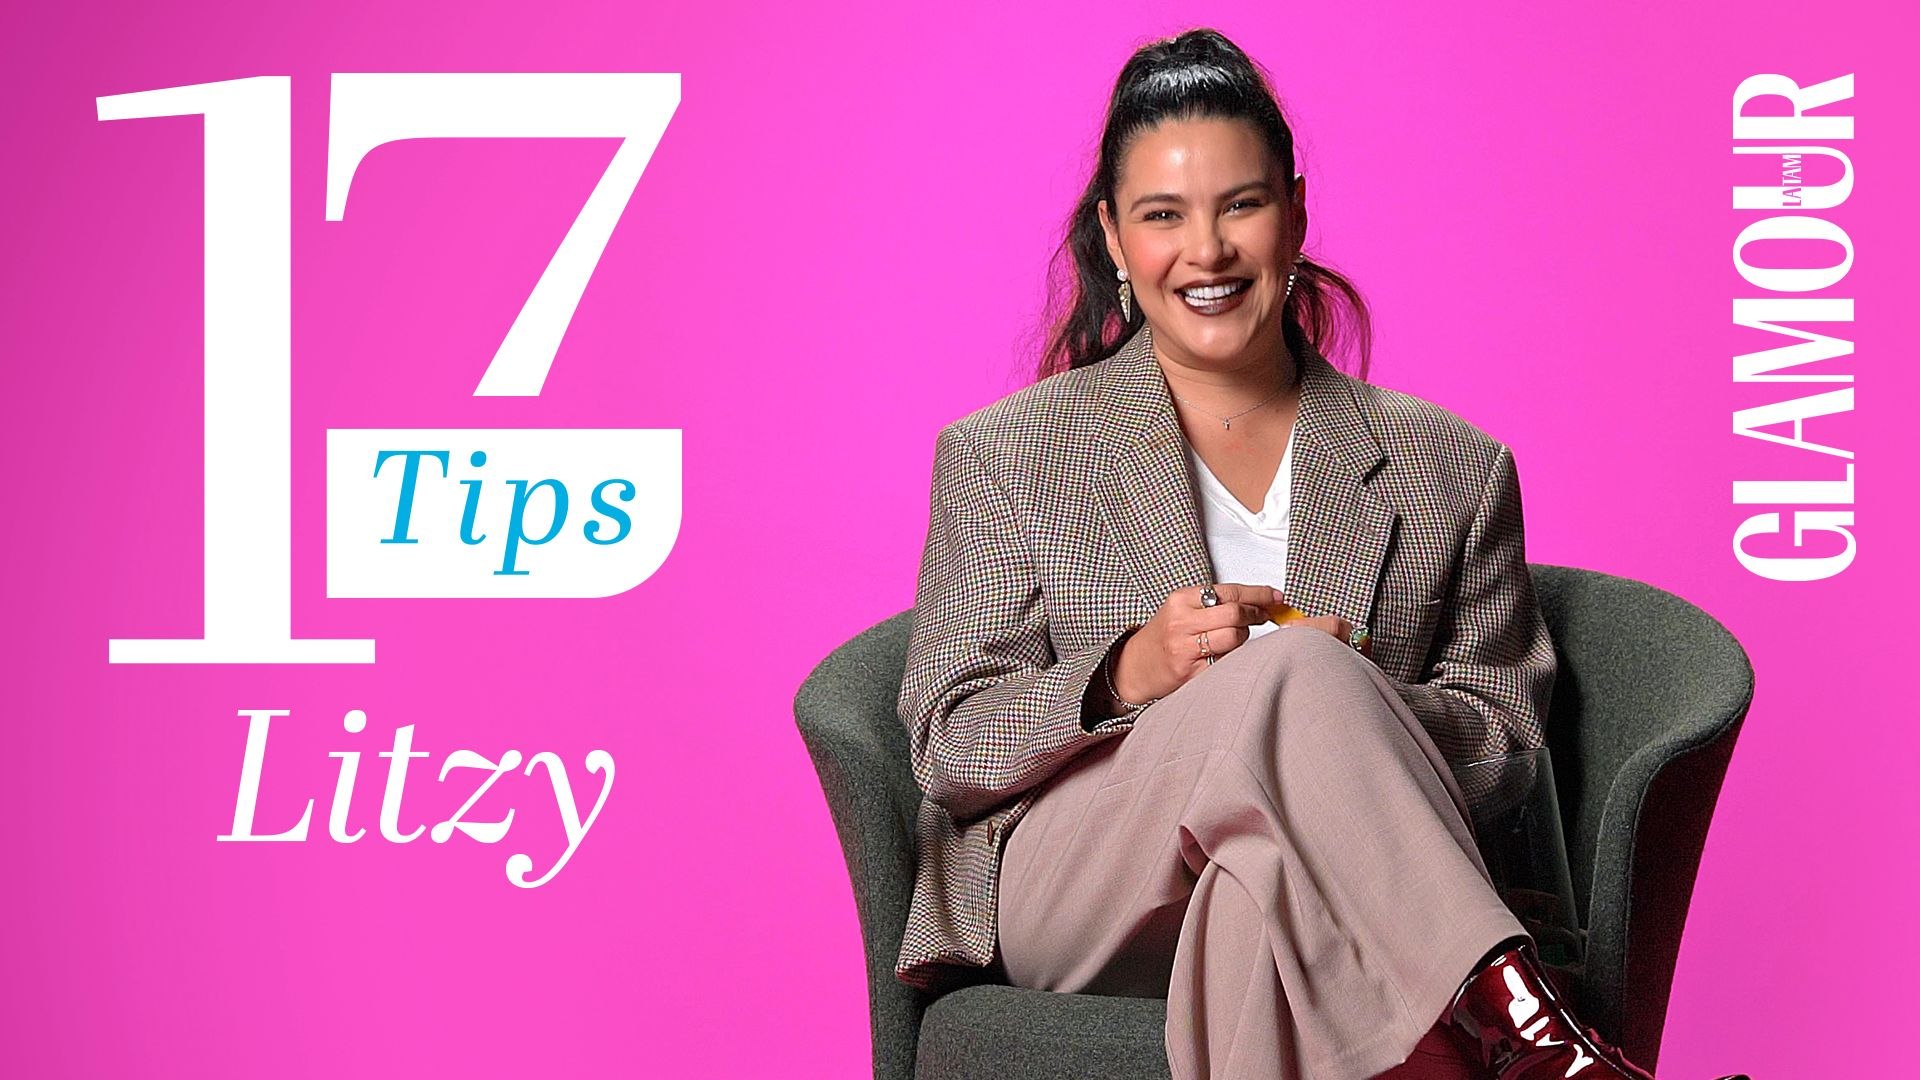 Litzy tiene los 17 tips que harán tu vida más sencilla - video Dailymotion